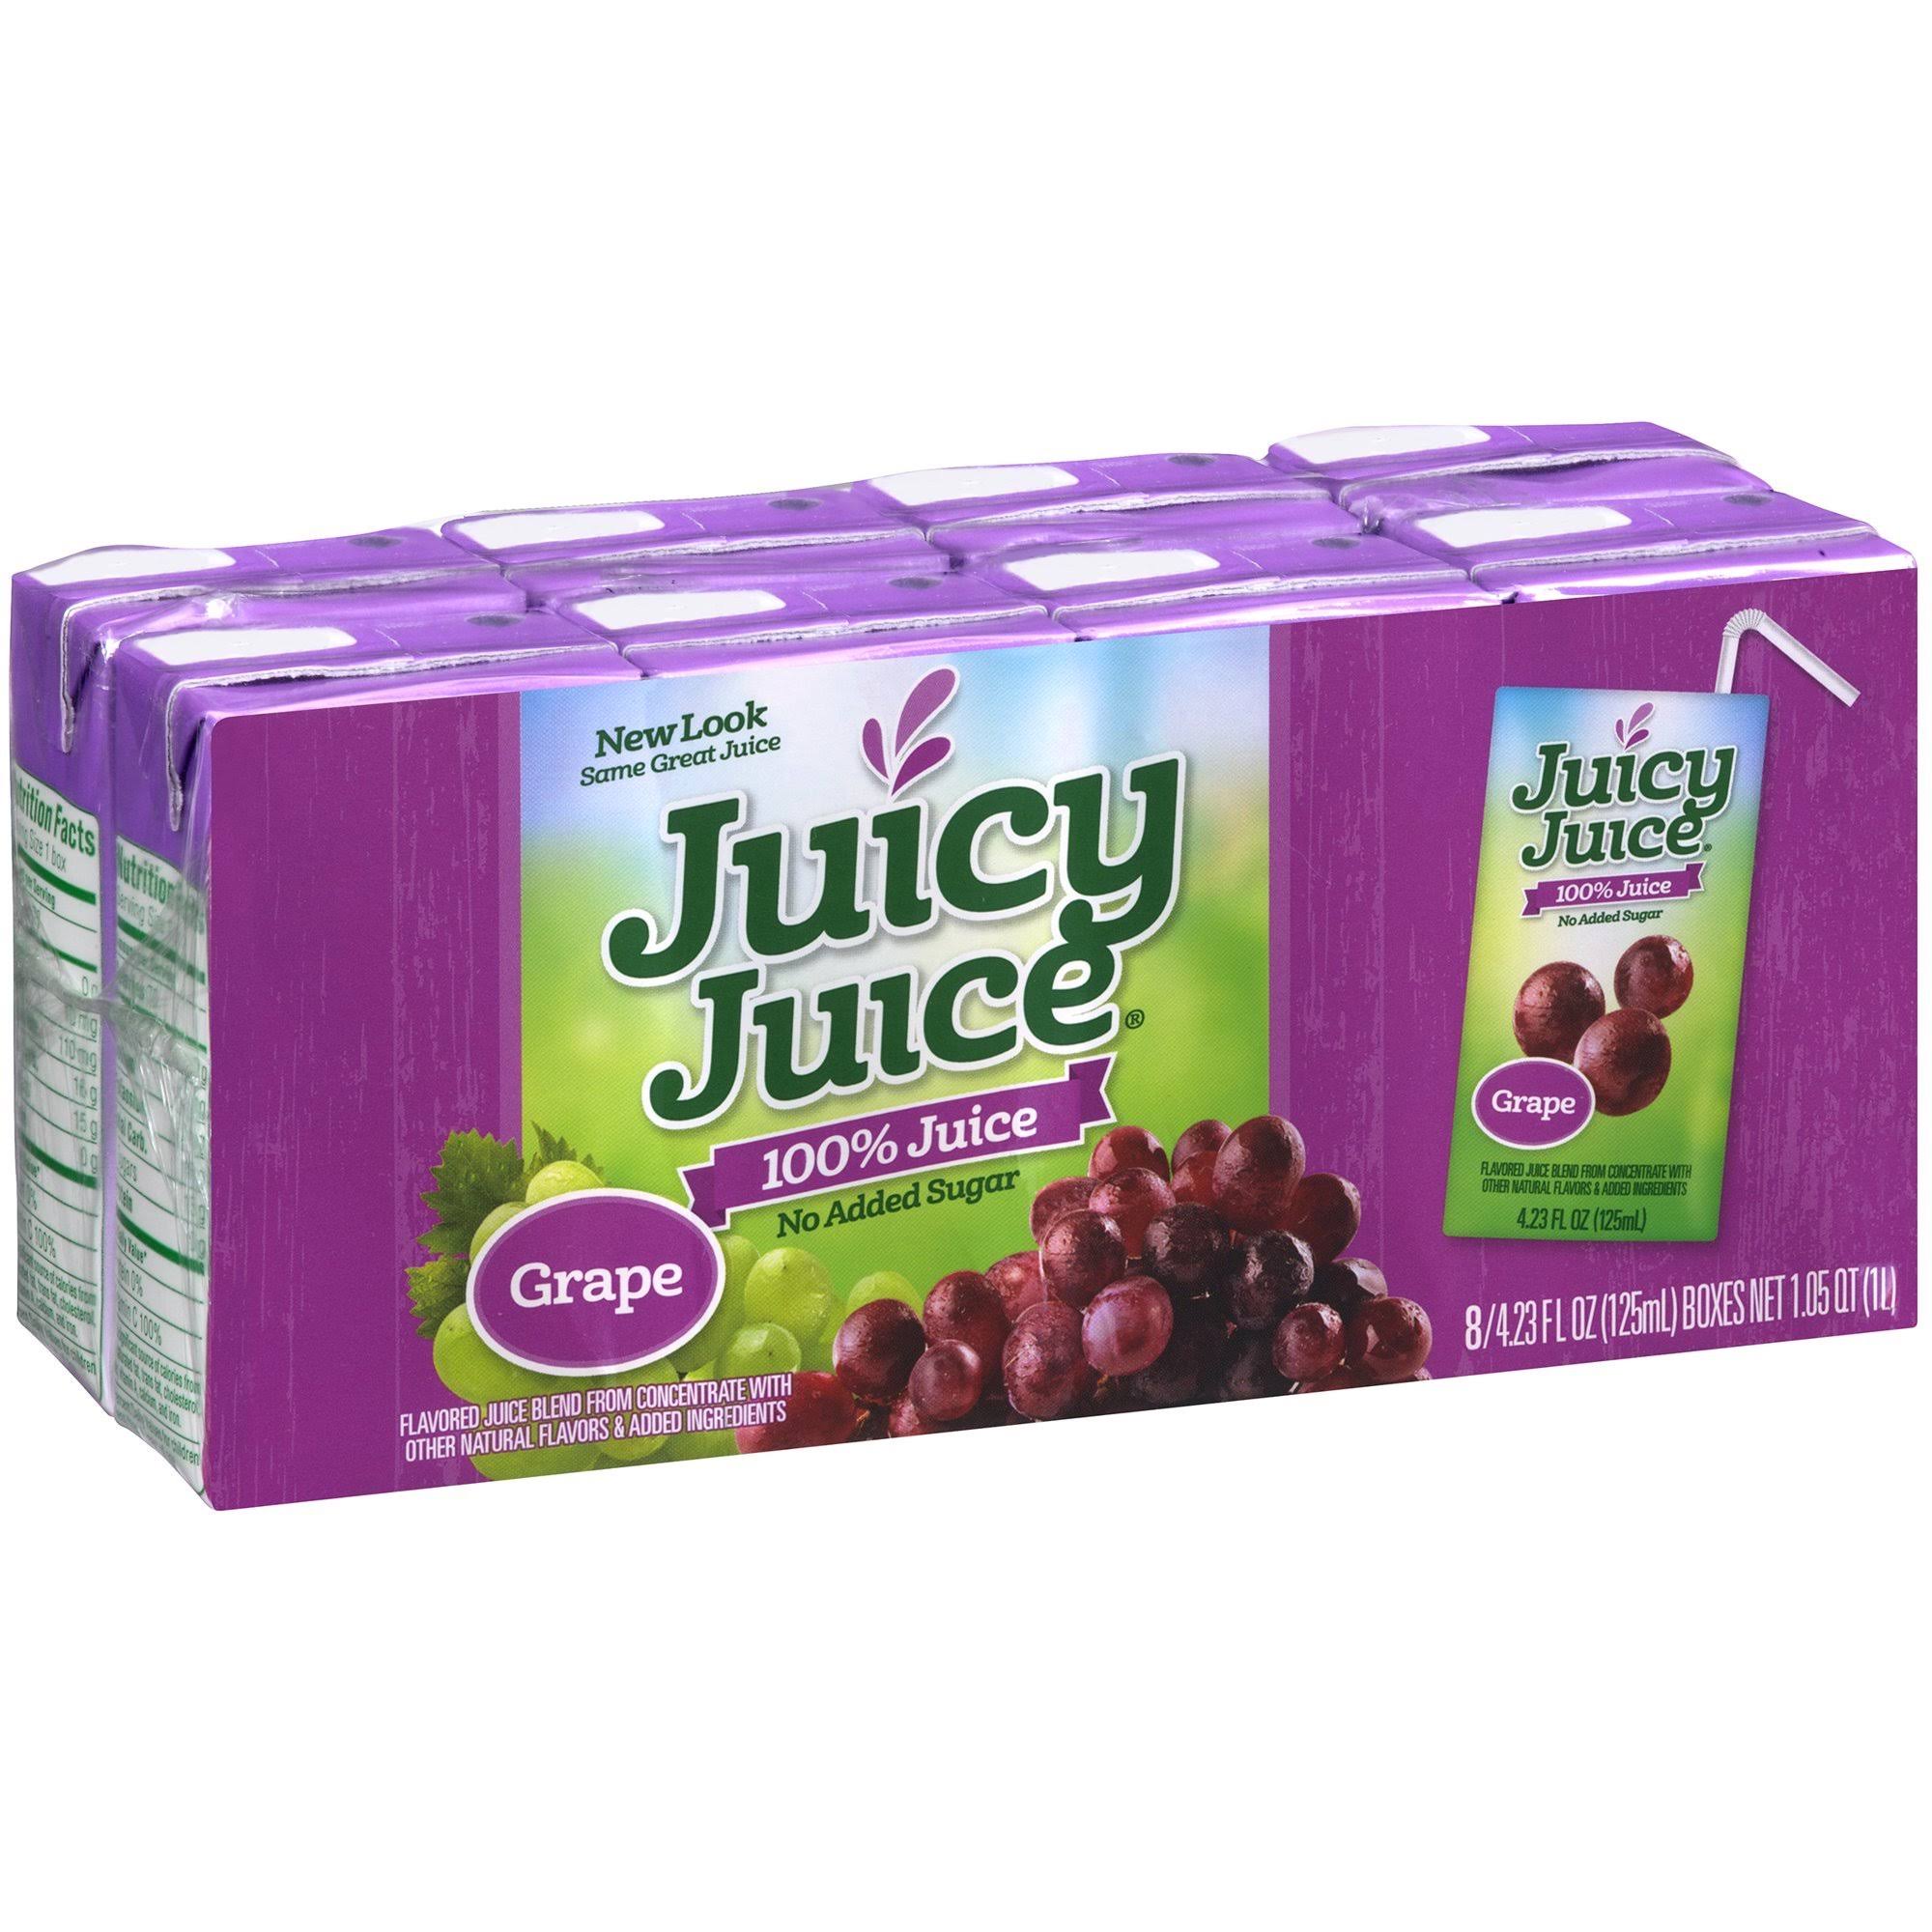 Juicy Juice 100% Juice - Grape, 6.75oz, 8ct